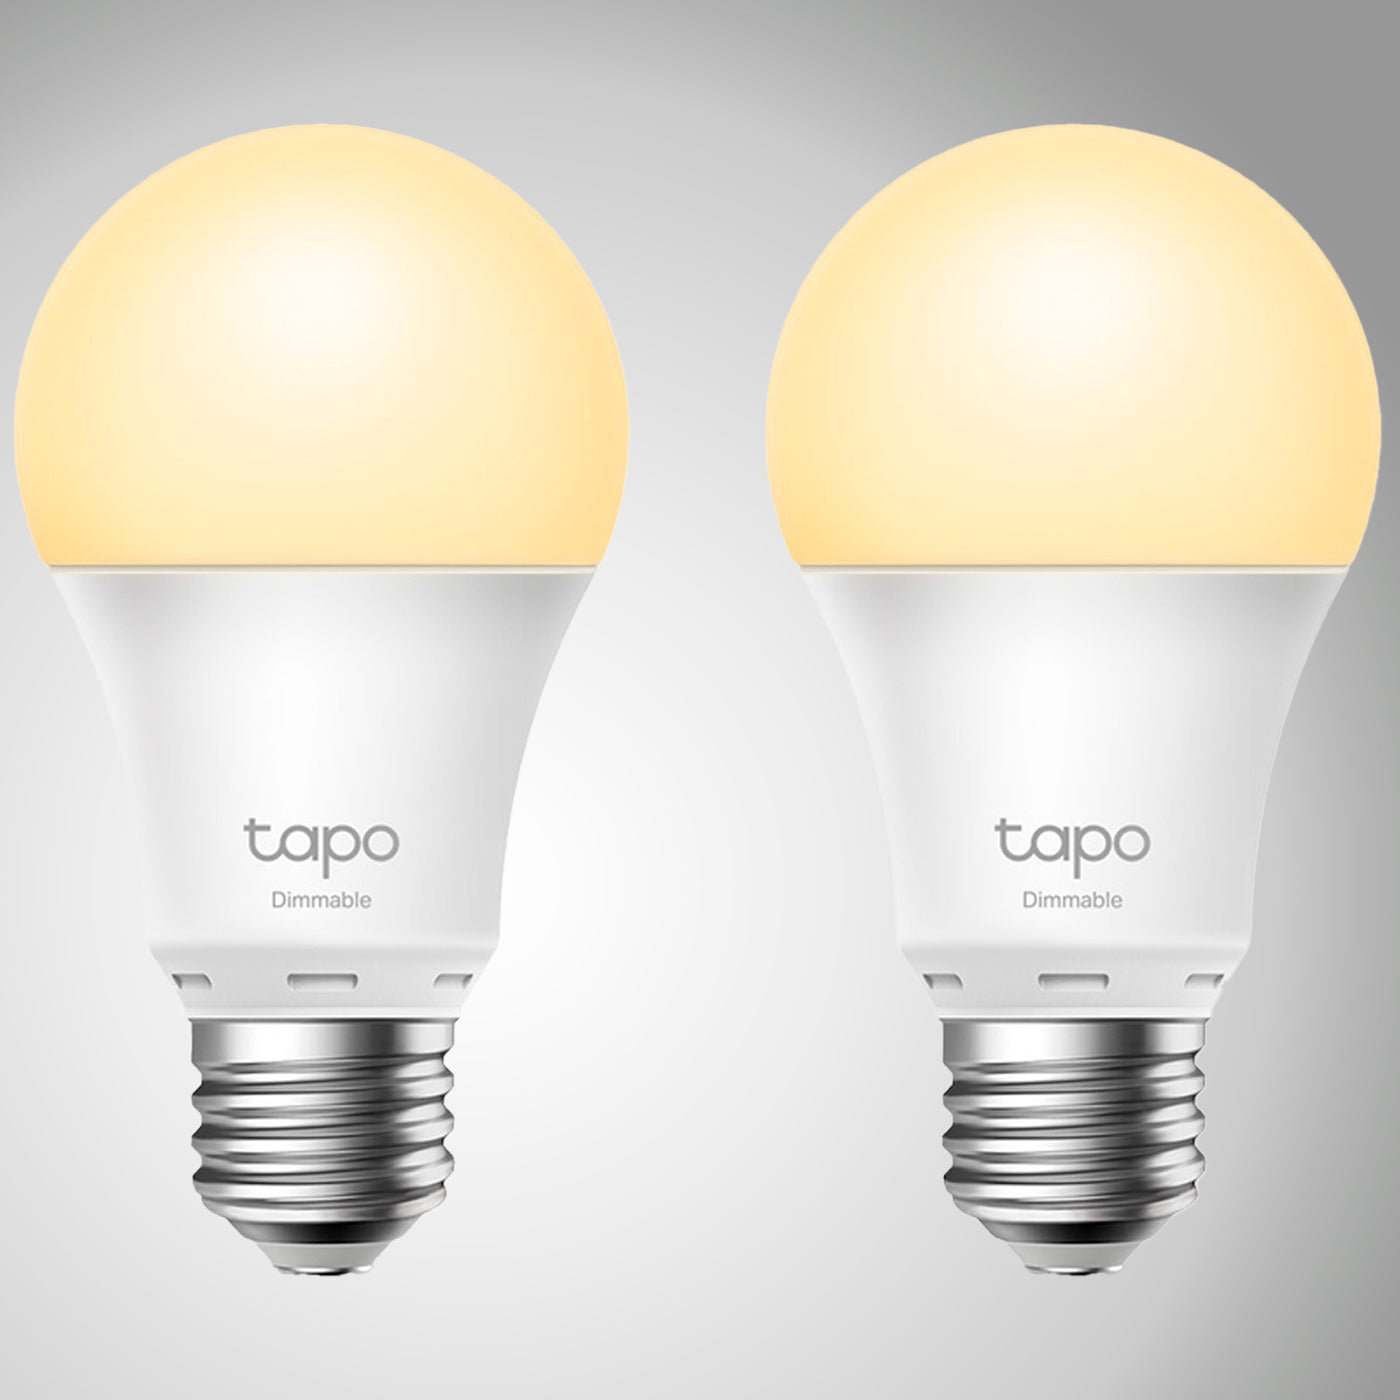 Tapo L510E, Bombilla LED Blanca Wi-Fi